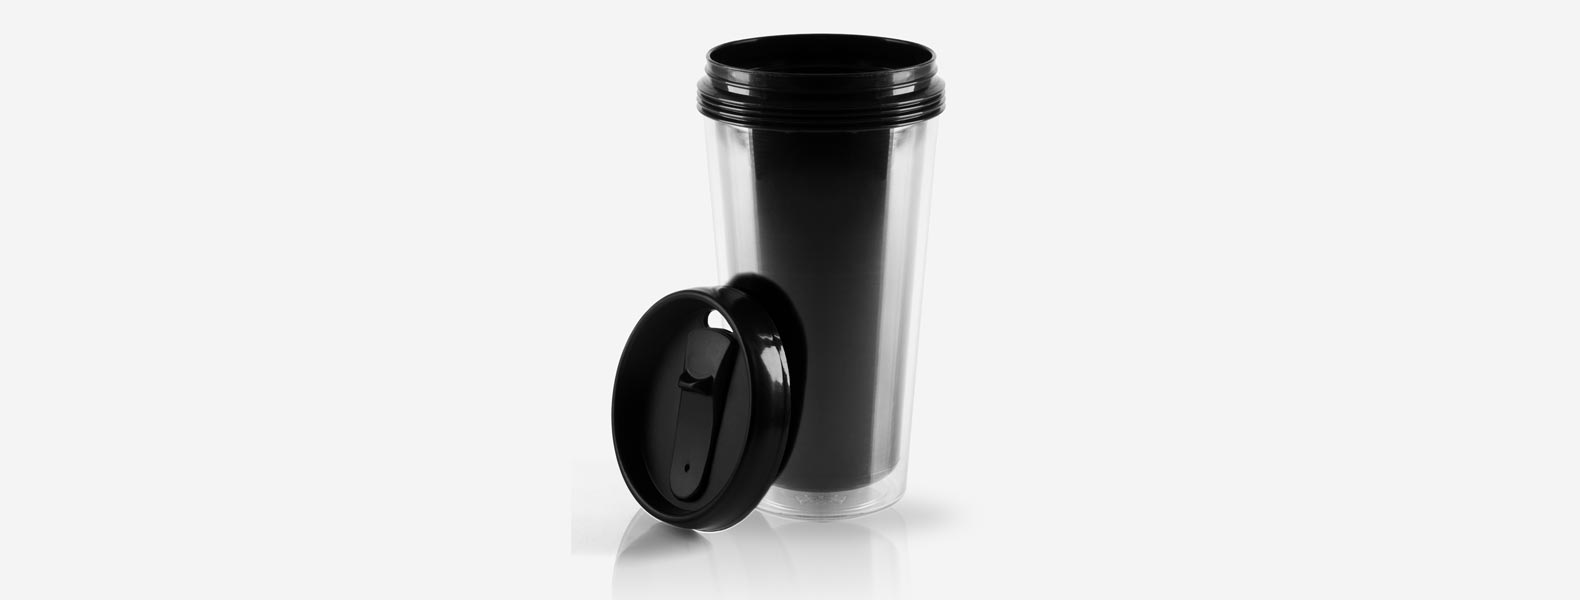 Copo plástico com tampa rosqueável em Polipropileno na cor preta, revestido em Plástico SAN e tampa rosqueável. A tampa possui trava de abertura e anel interno em Silicone para vedação Capacidade: 450 ml